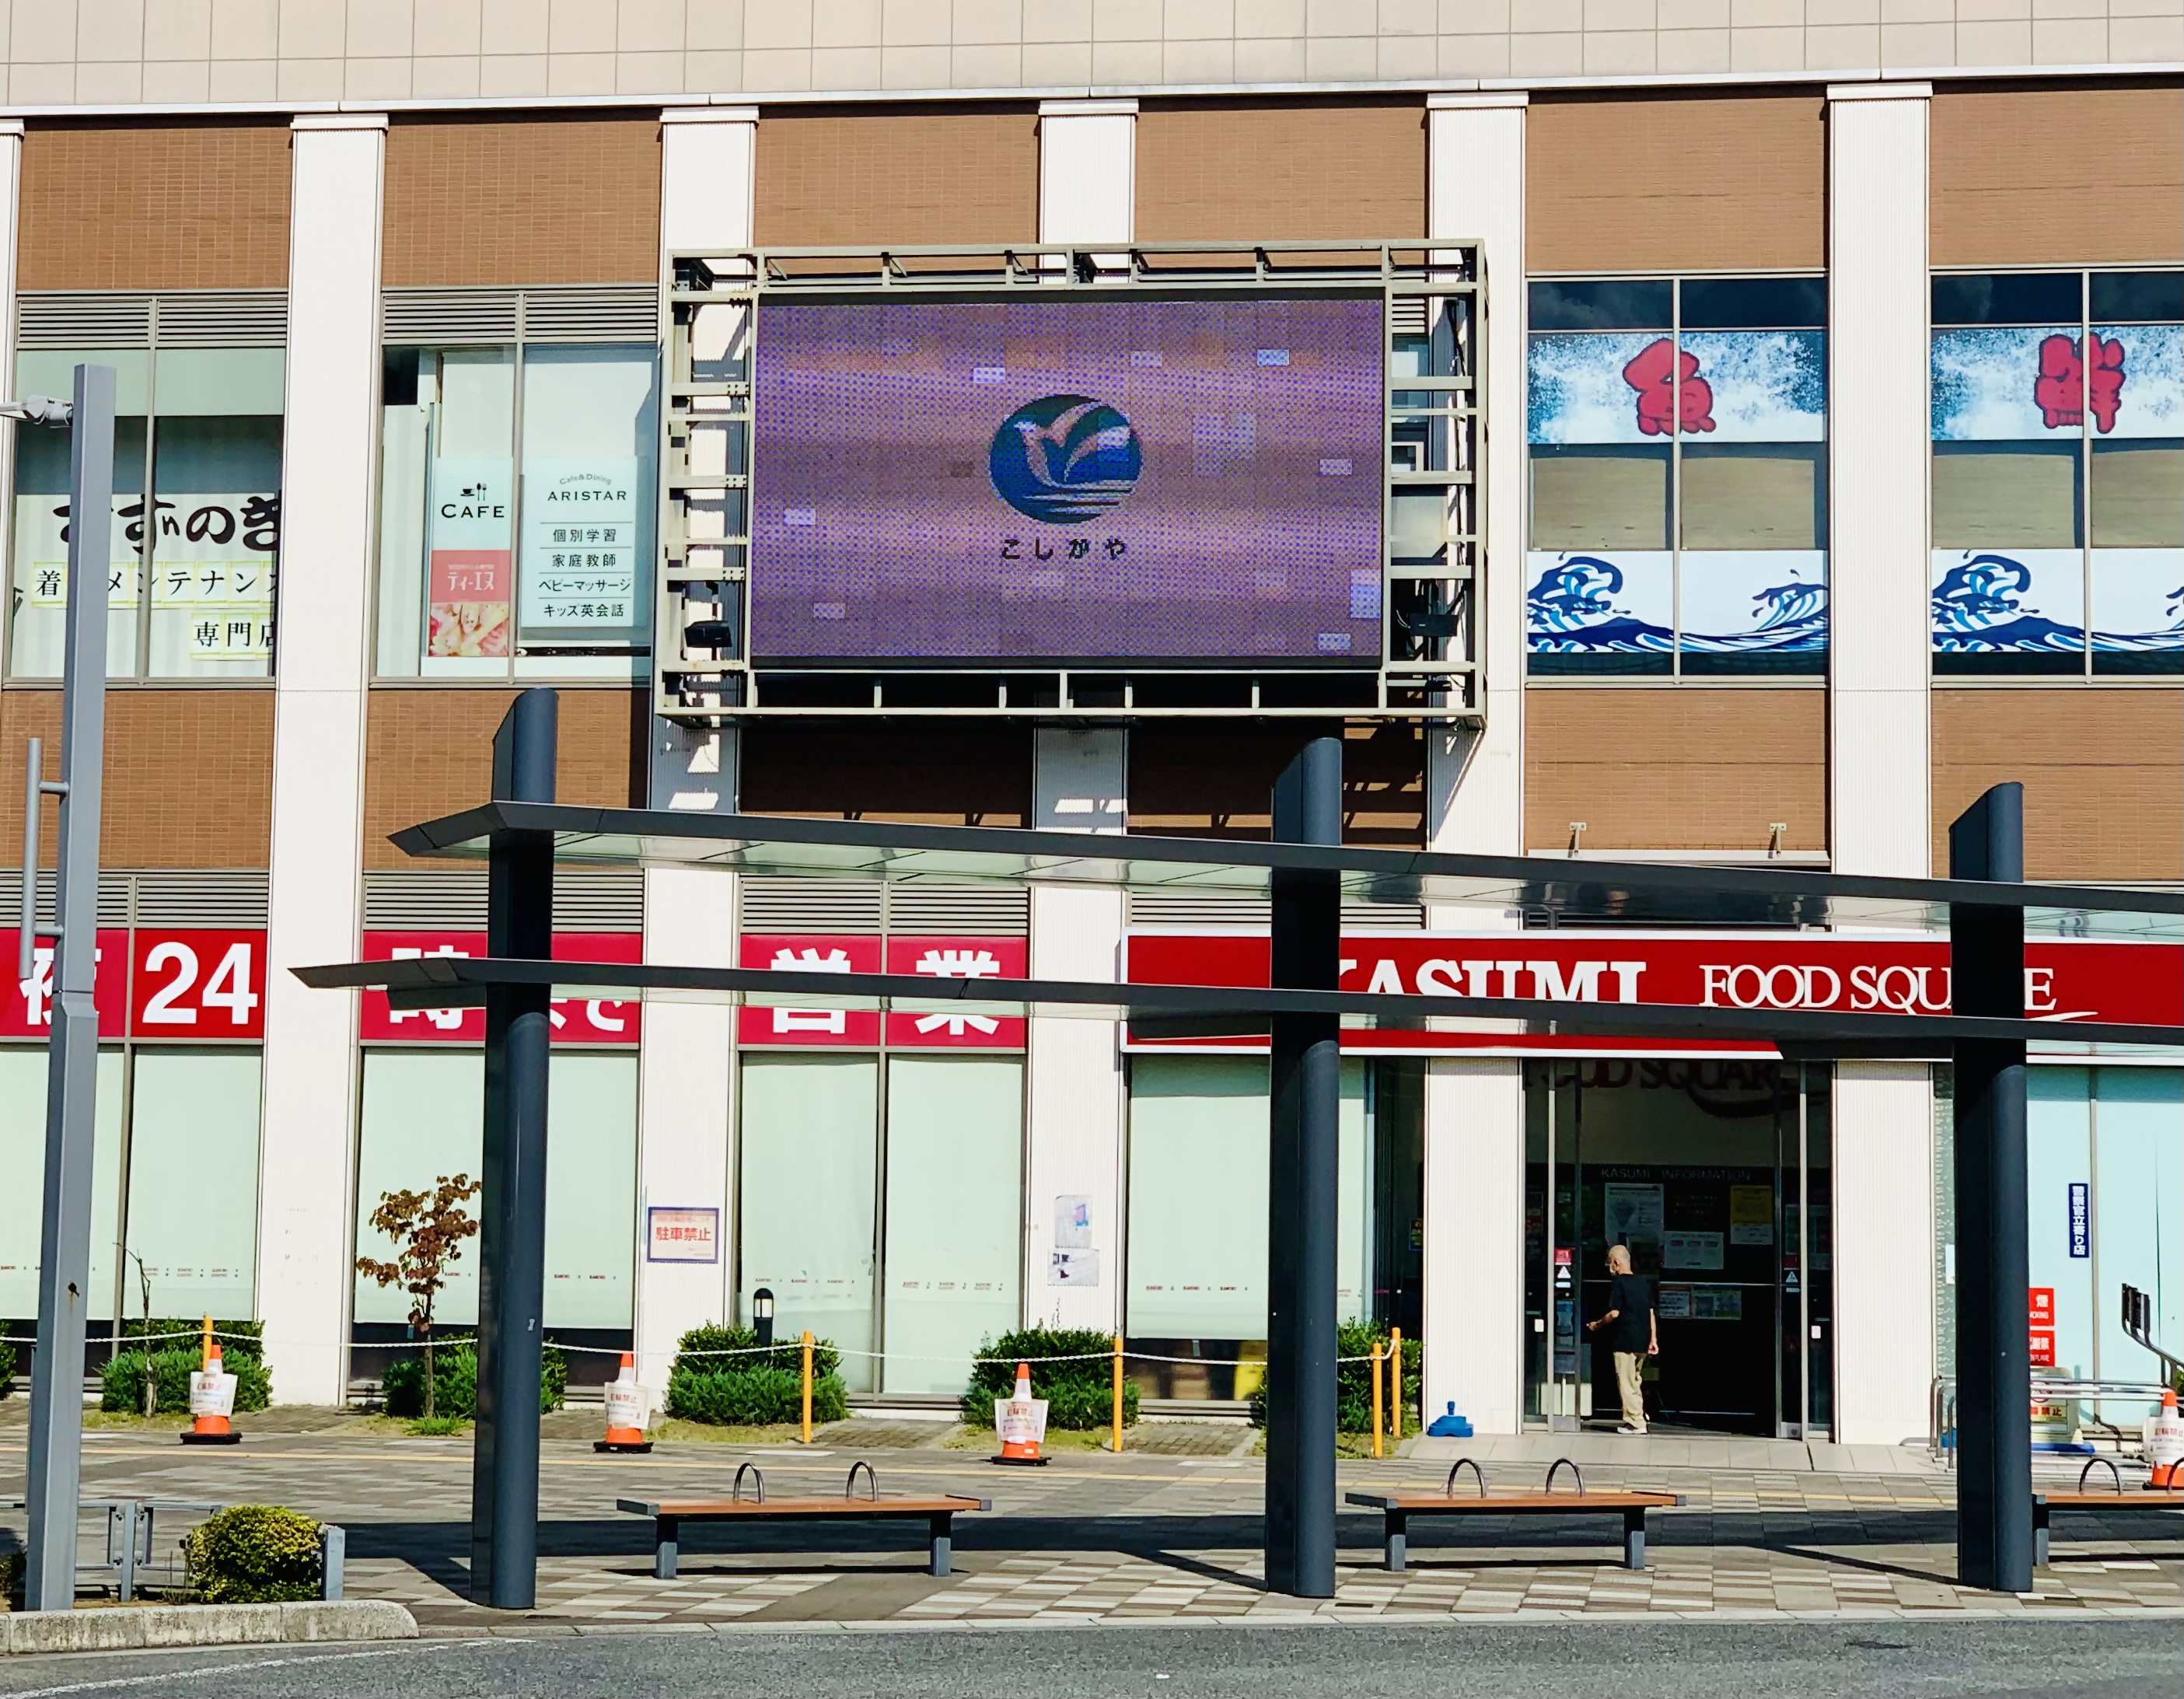 越谷駅東口の大型ビジョン写真